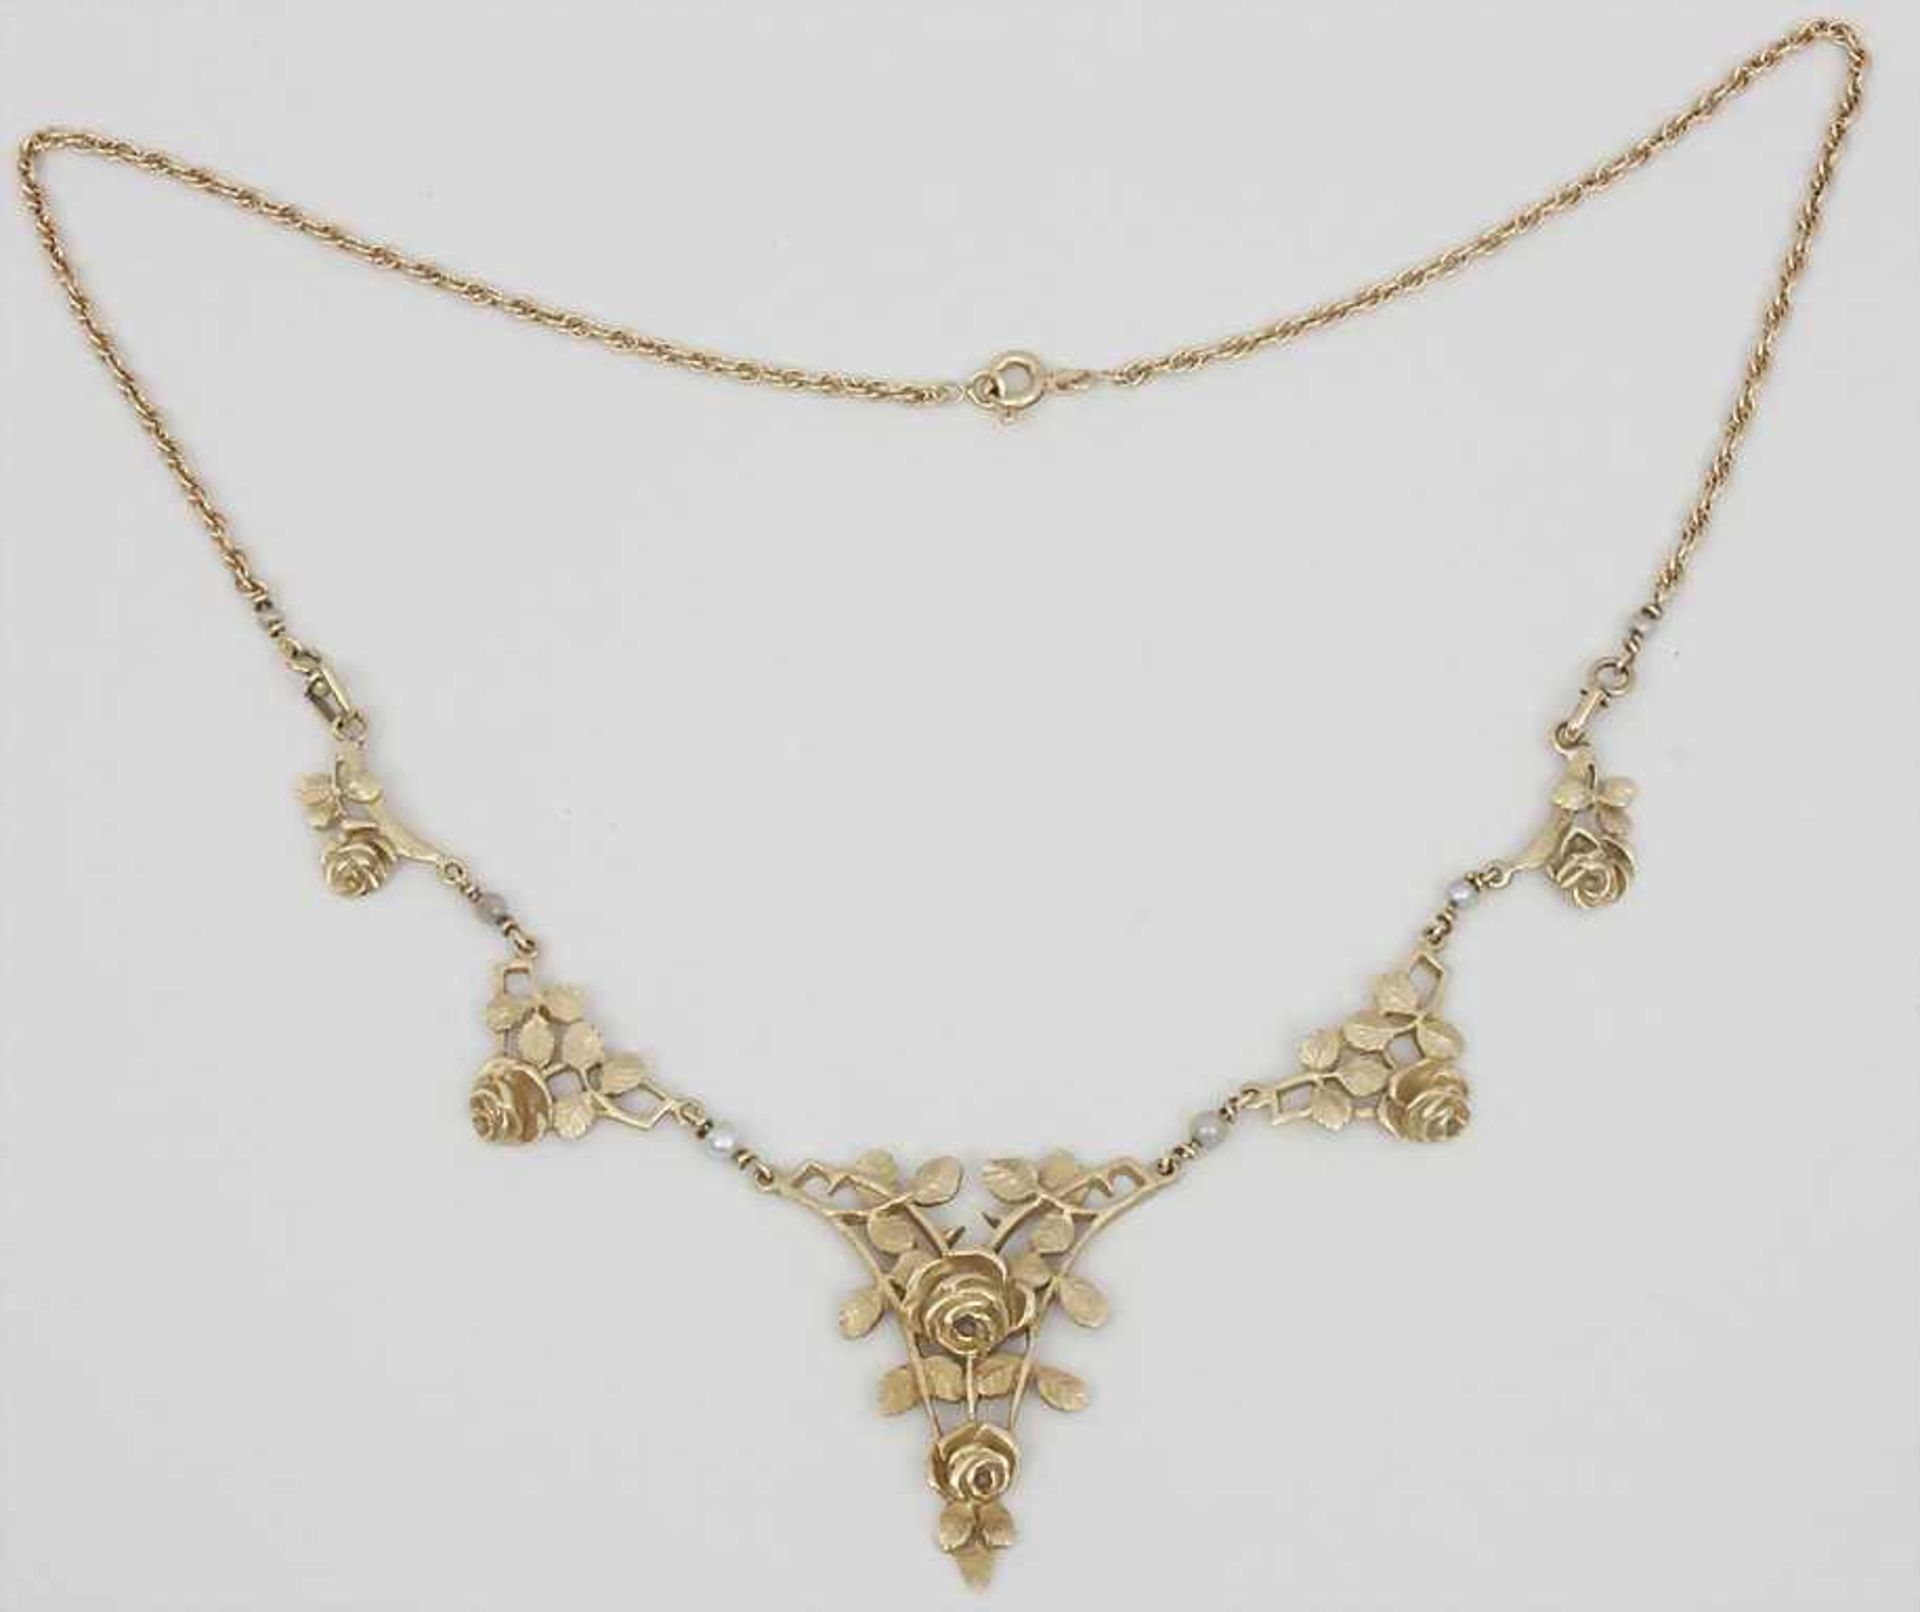 Jugendstil Rosen-Collier / Art Nouveau Roses Necklace Material: Gelbgold 750/000 18 Kt geprüft,